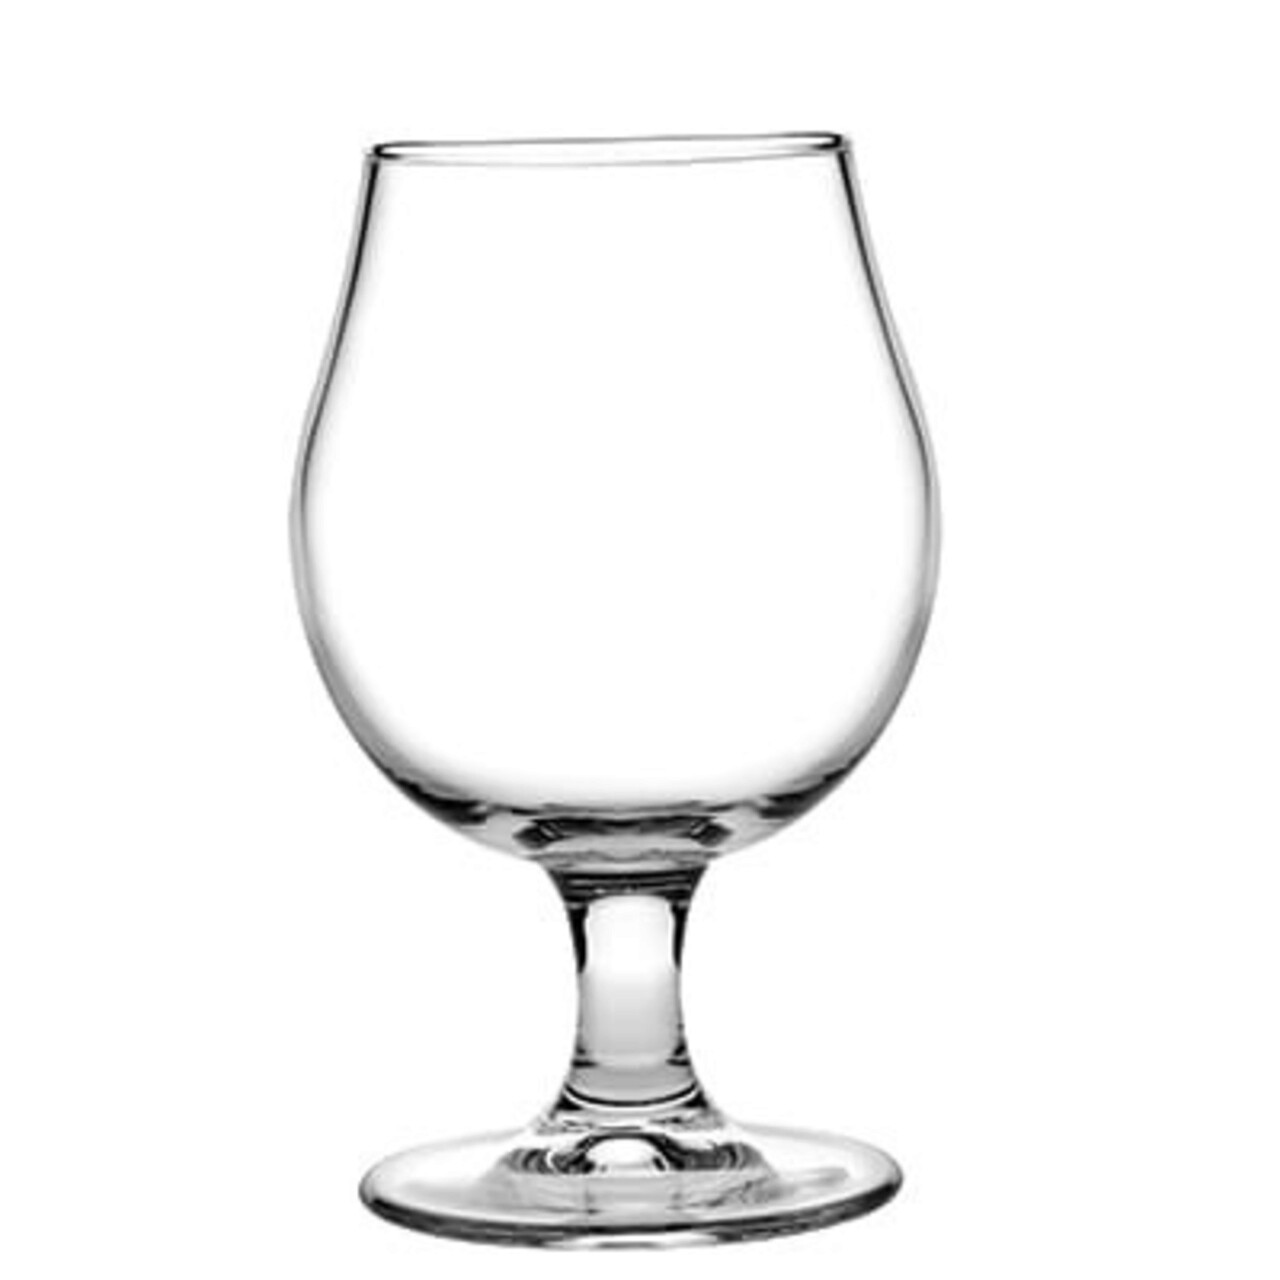 Pahar bere cu picior Draft, Pasabahce, 460 ml, sticla, transparent